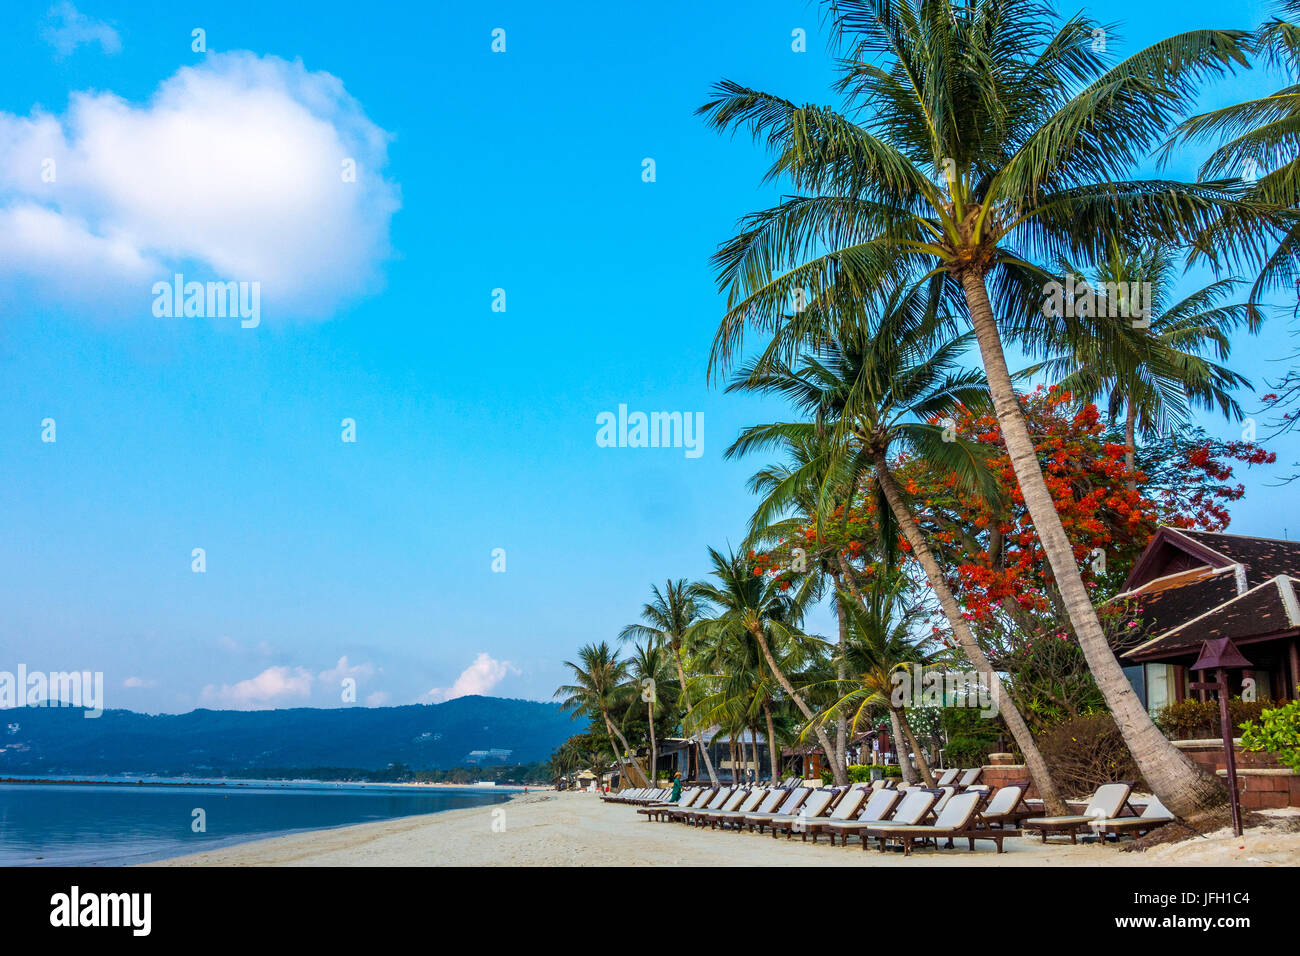 Sedie a sdraio sulla spiaggia di attendere per il turista, la spiaggia di Chaweng, isola di Ko Samui, Thailandia, Asia Foto Stock